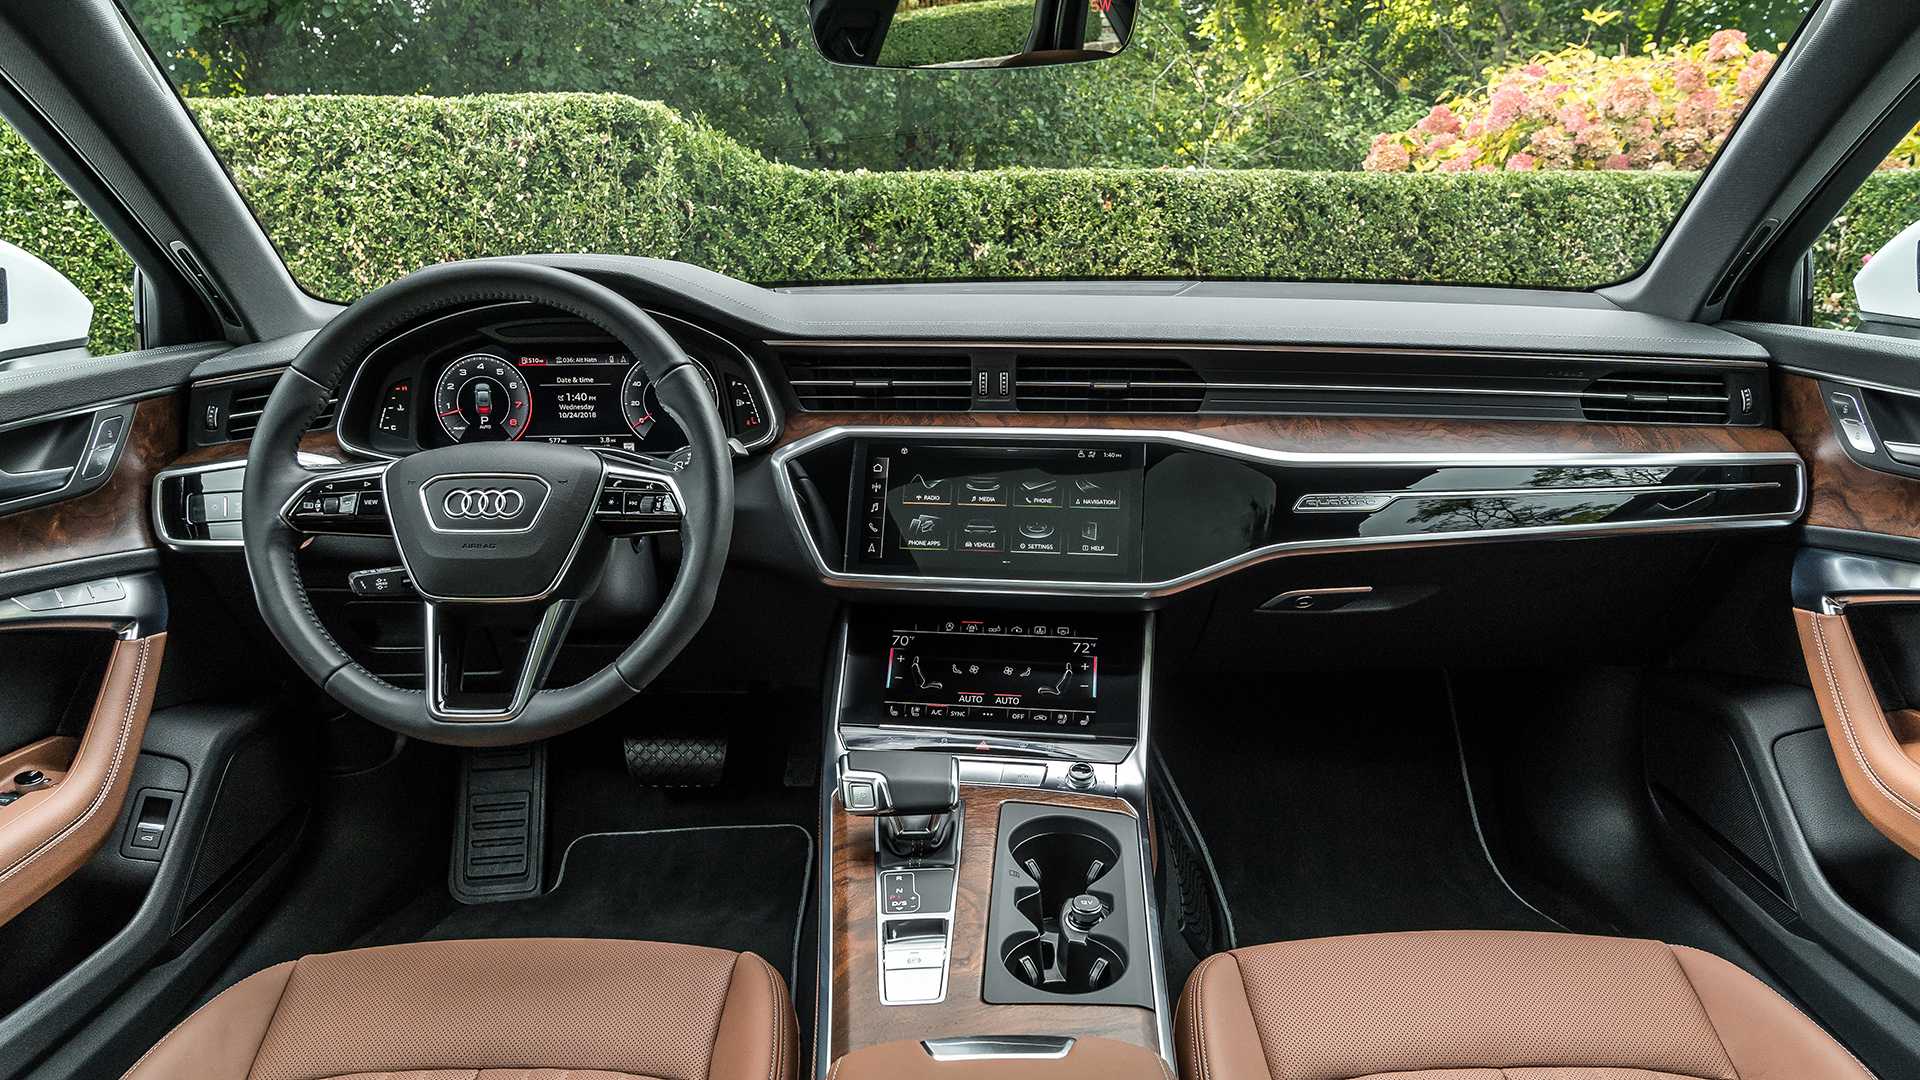 2019 6. Audi a6 2019 салон. Audi a6 2021 салон. Audi a6 2020 салон. Audi a6 c8 2018.